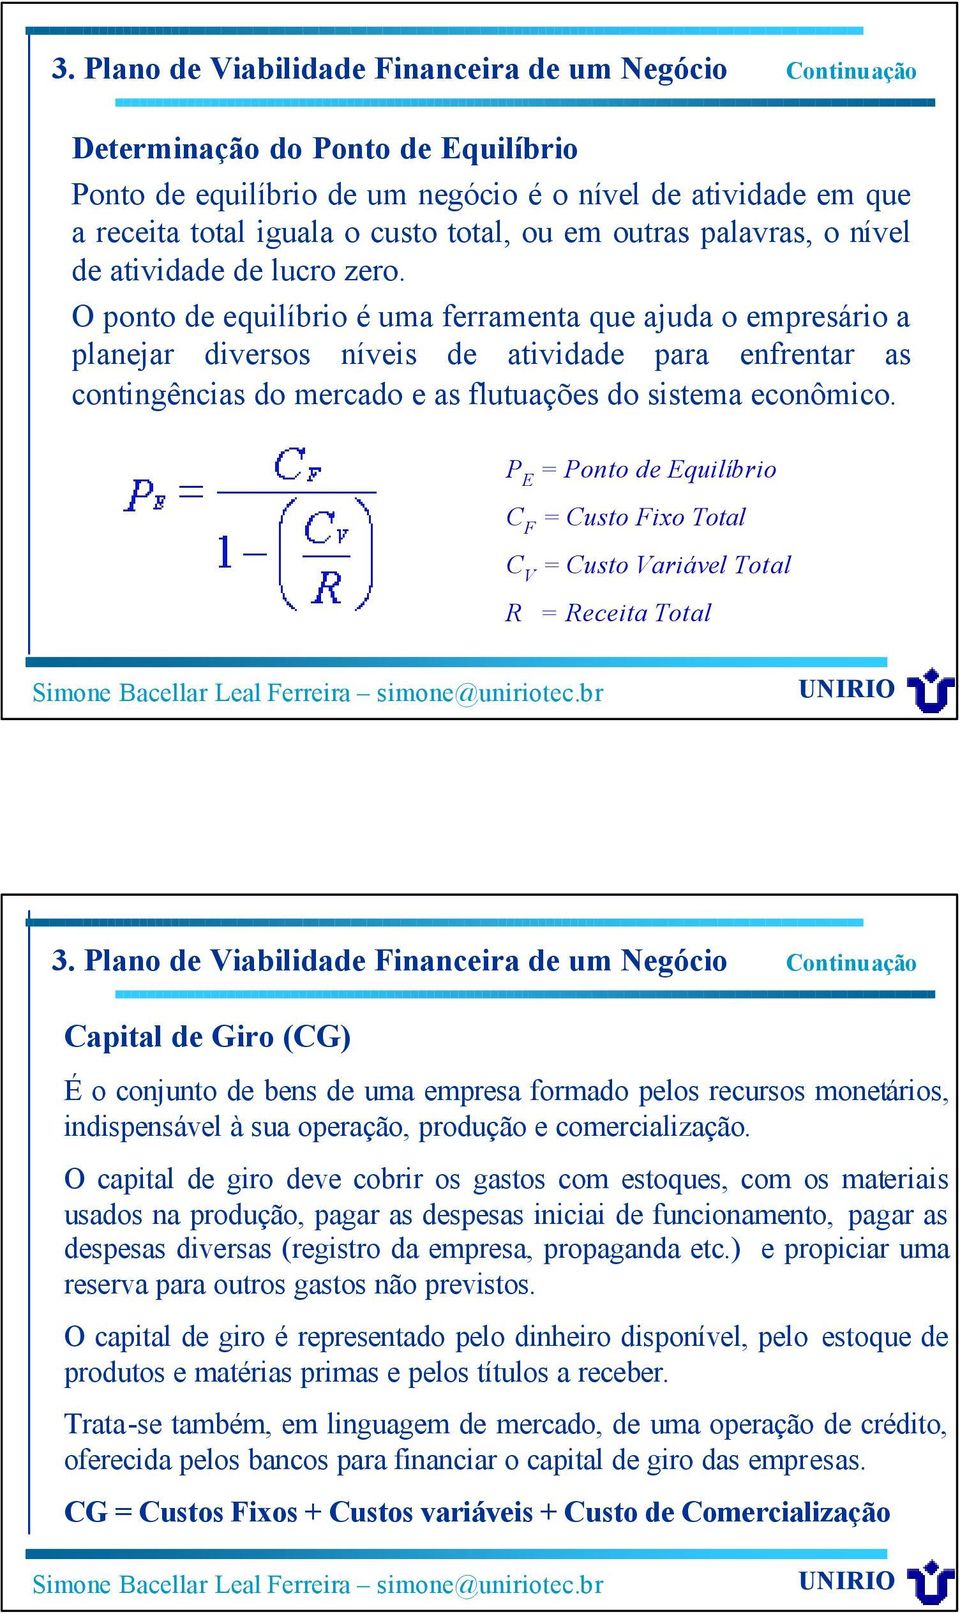 P E = Ponto de Equilíbrio C F = Custo Fixo Total C V = Custo Variável Total R = Receita Total Capital de Giro (CG) É o conjunto de bens de uma empresa formado pelos recursos monetários, indispensável